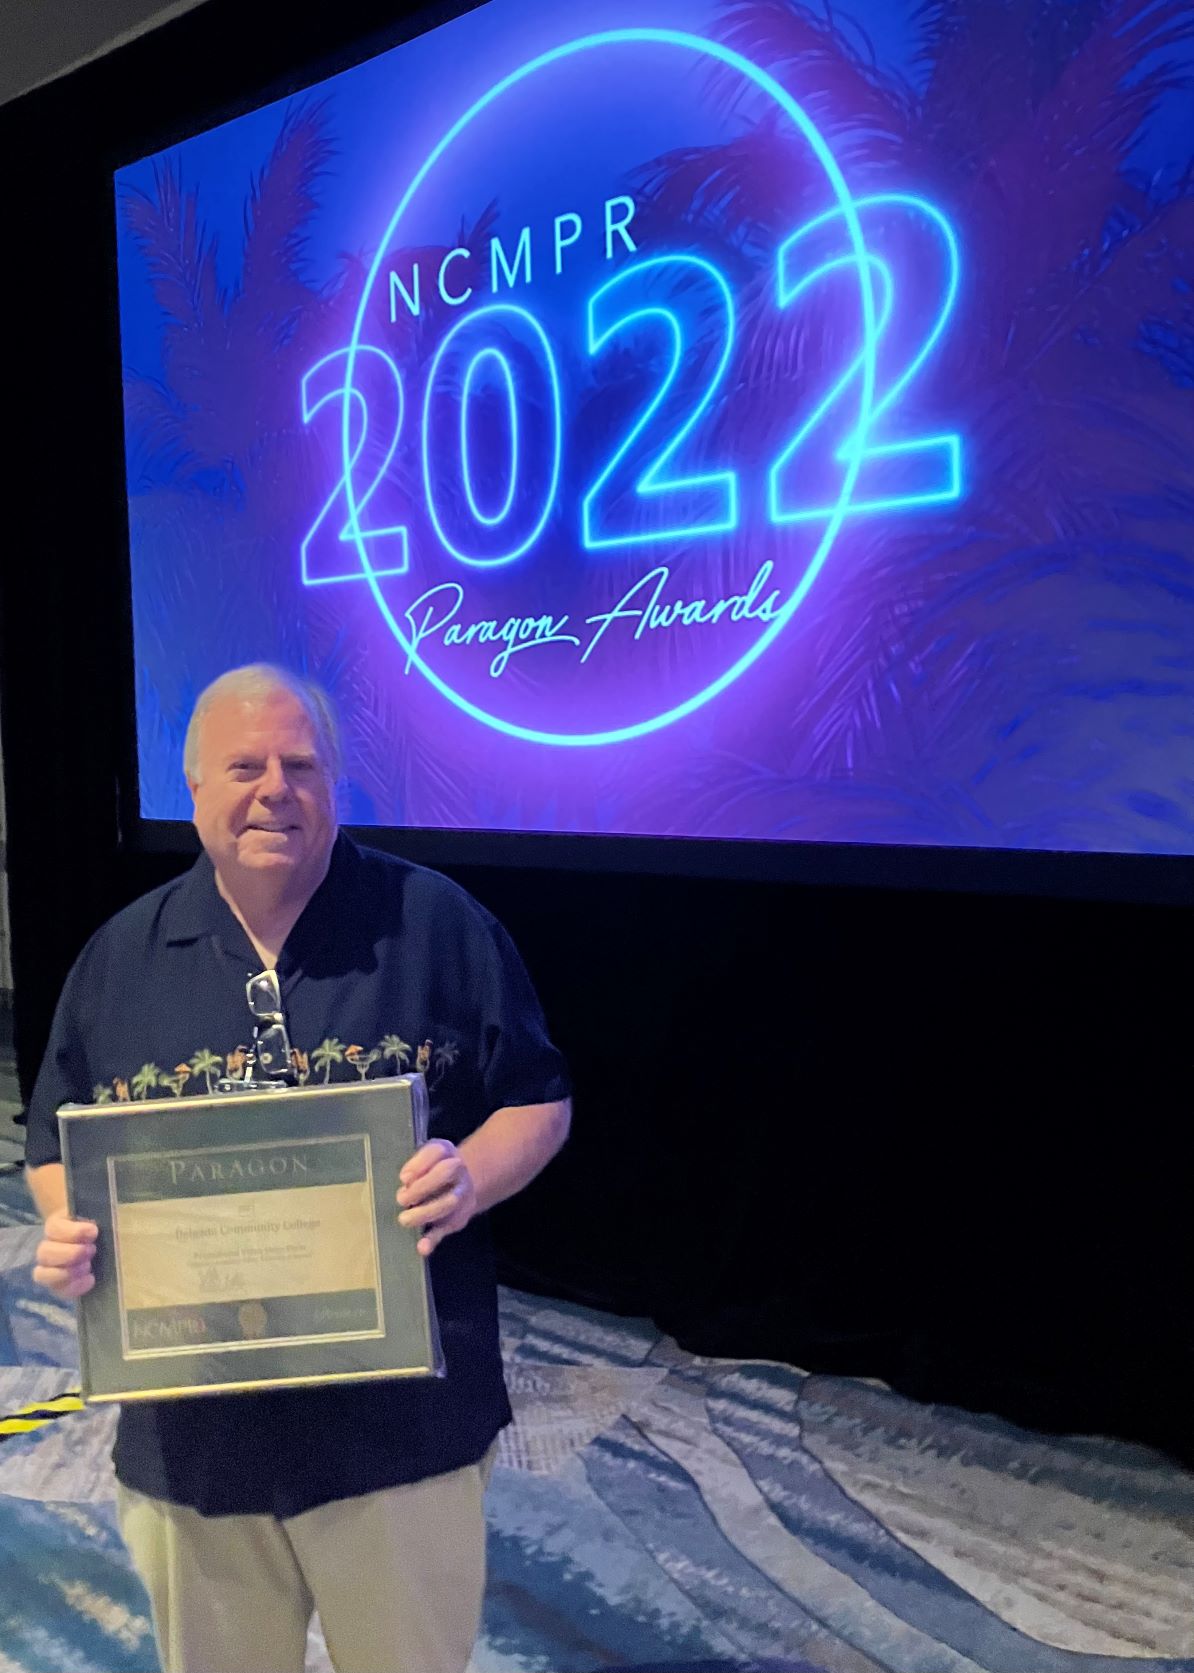 Tony Cook Paragon Award 2022